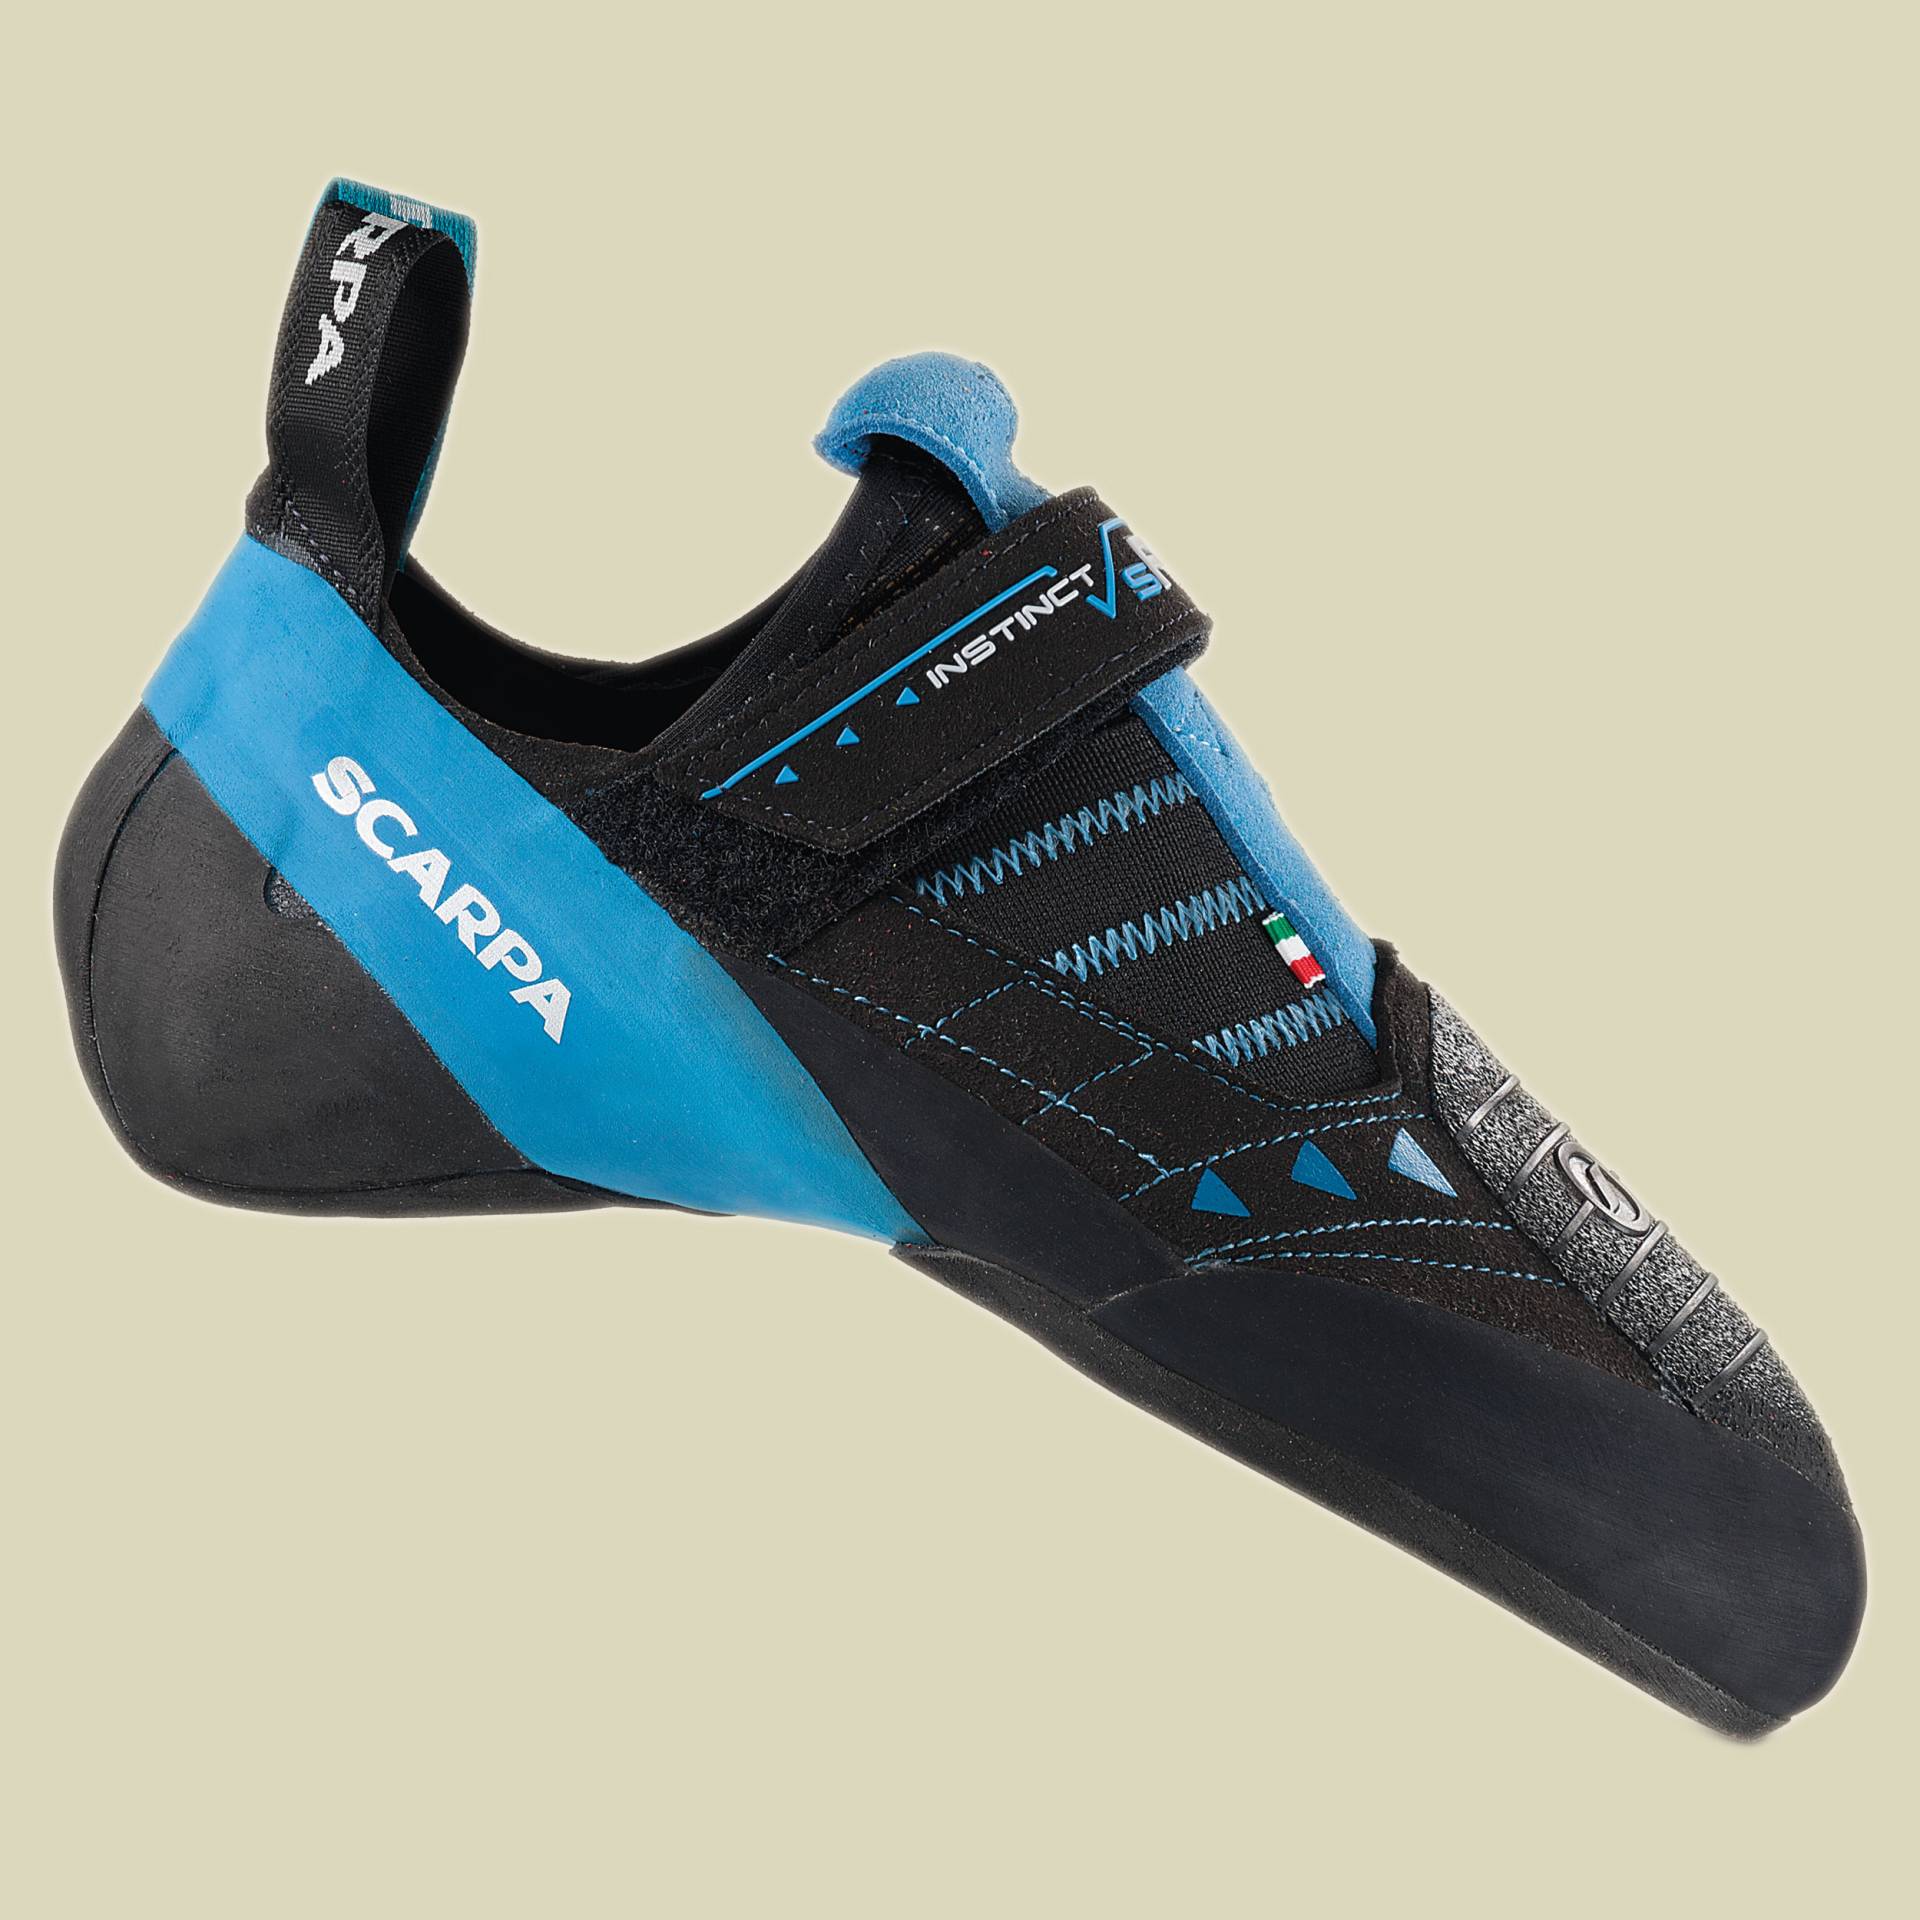 Instinct VSR Größe 44,5 Farbe black/azure von Scarpa Schuhe